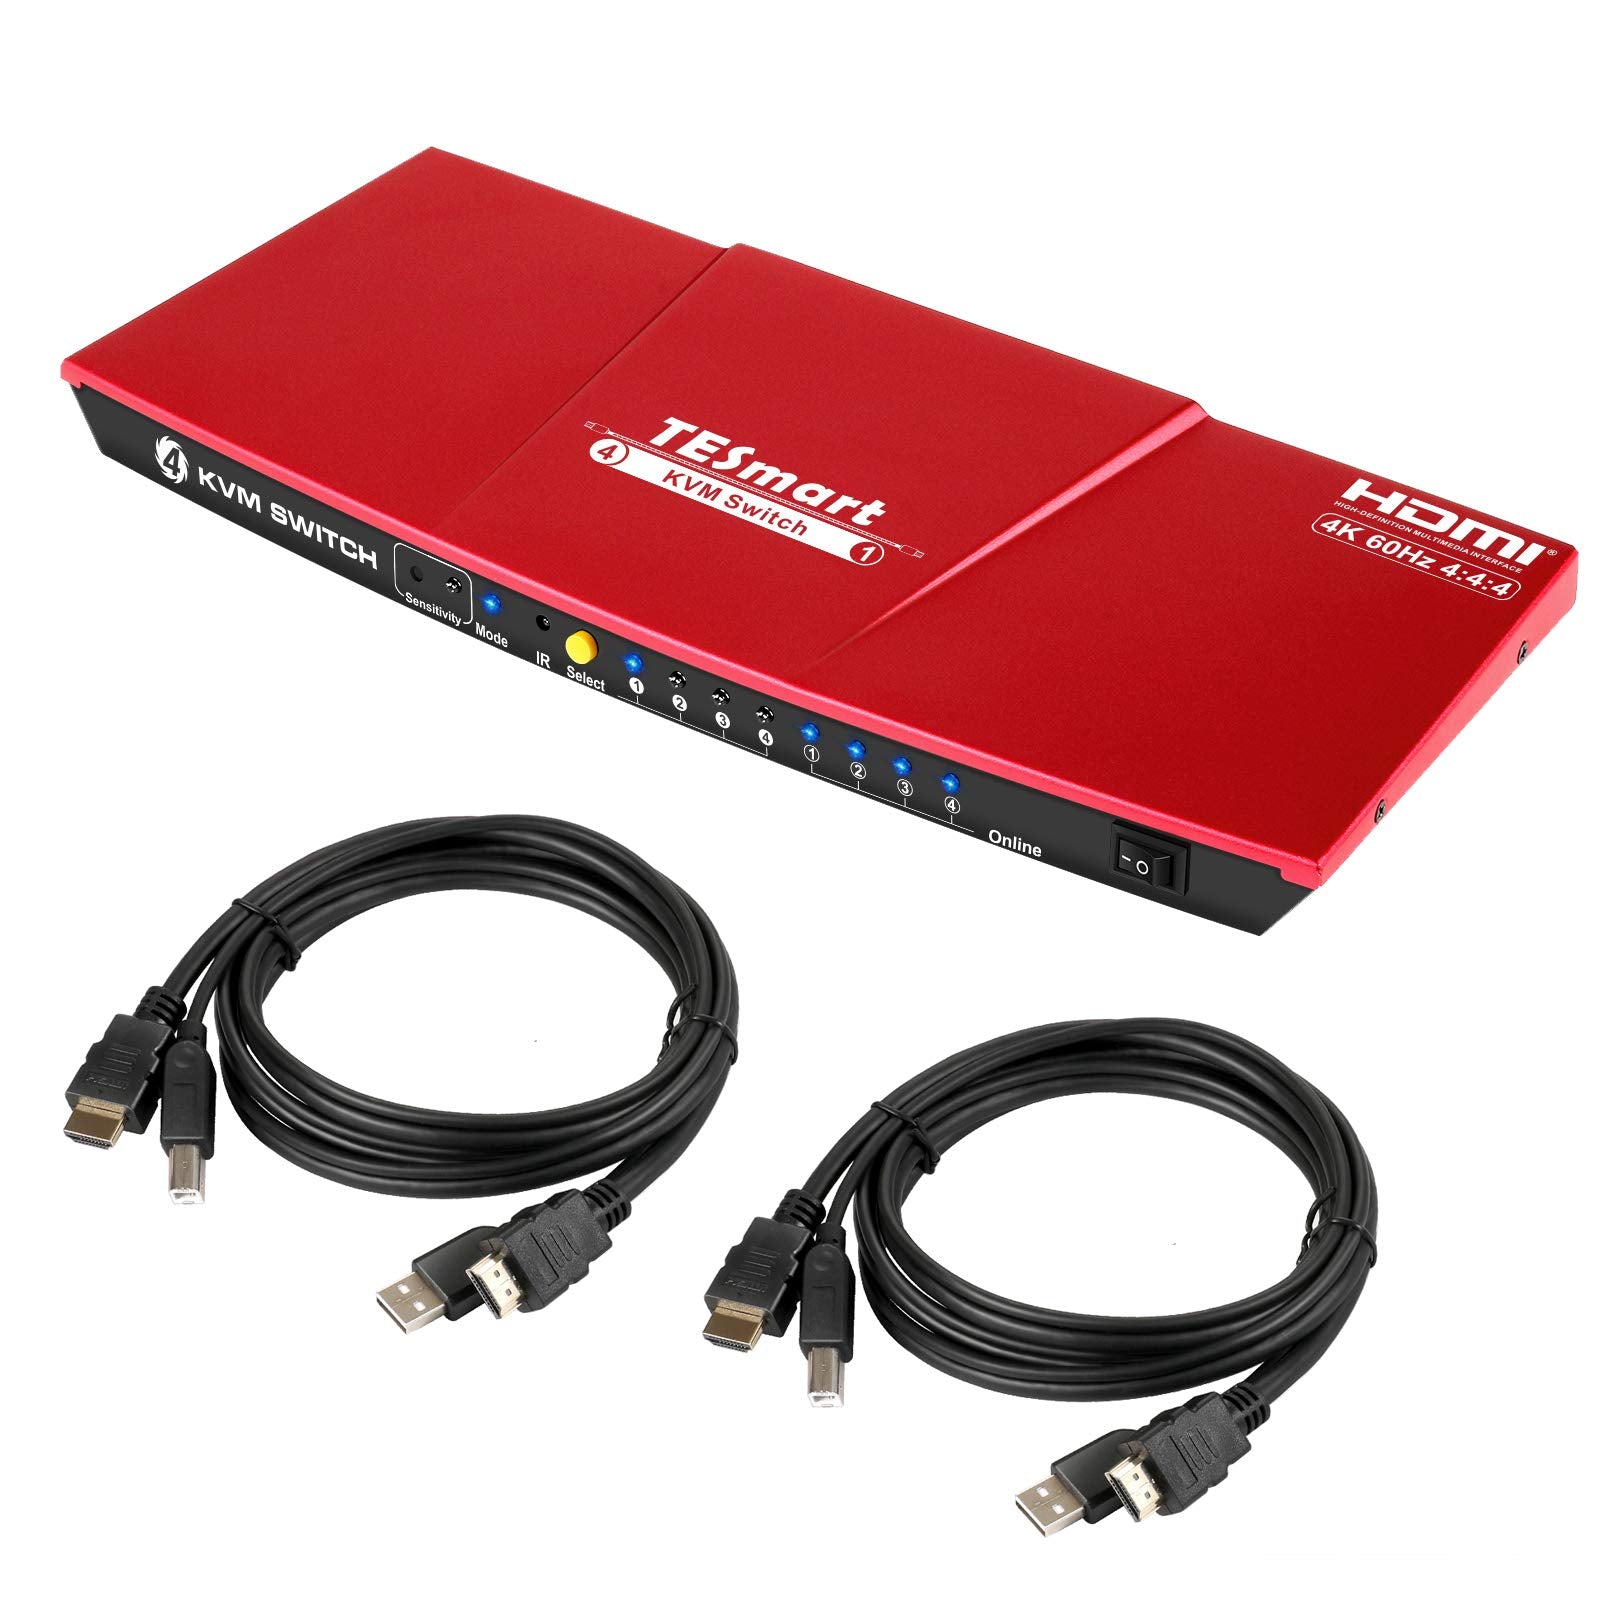 4 ポート KVM スイッチ HDMI 4K60Hz EDID付き | 4PC&1モニター